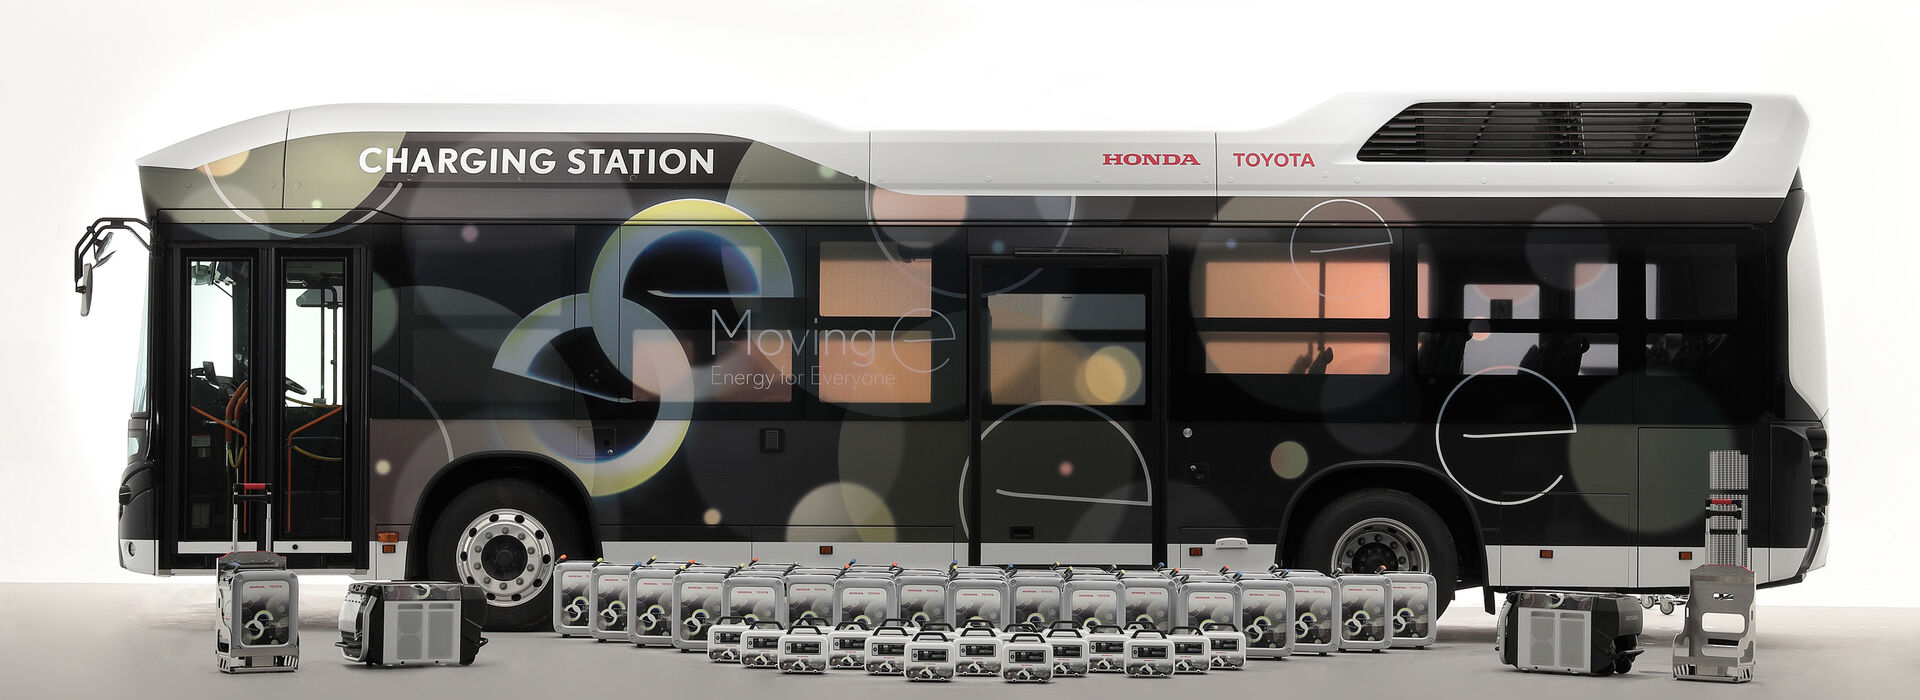 Toyota/Honda Moving e